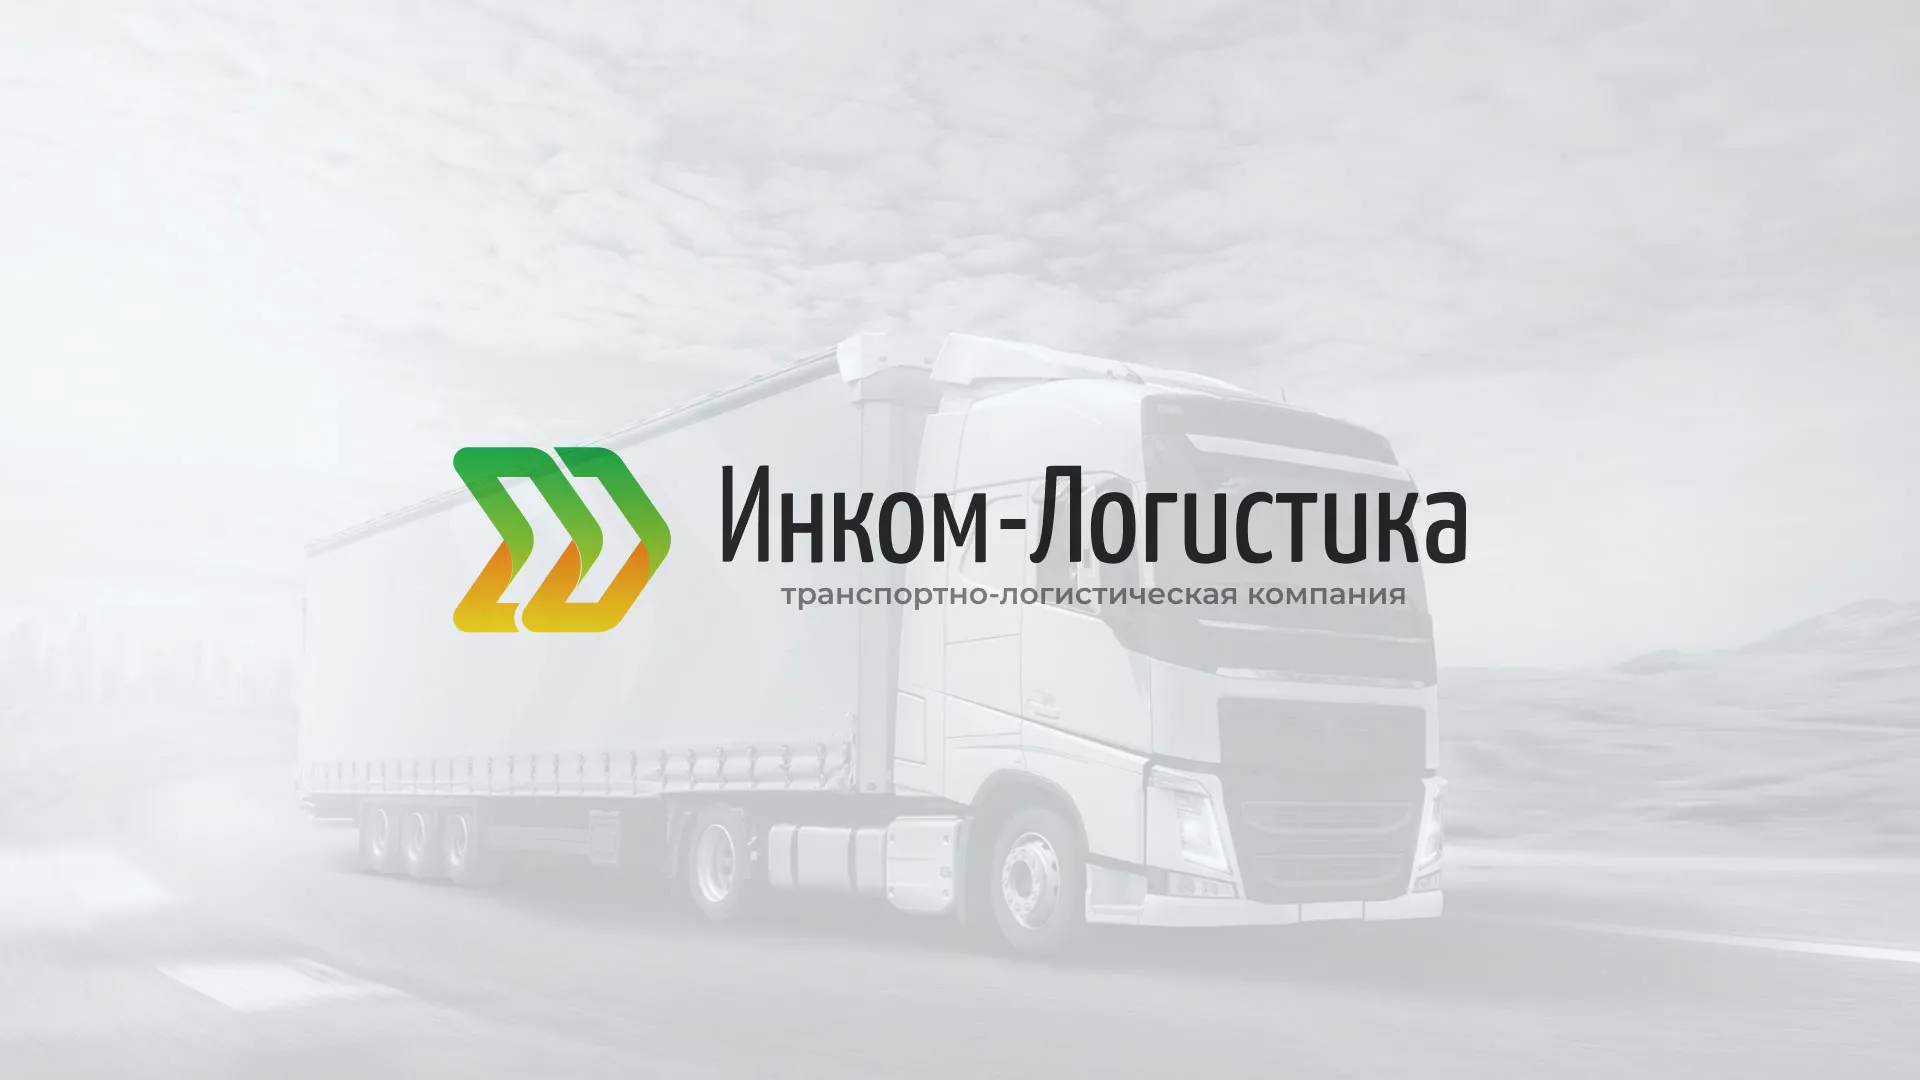 Разработка логотипа и сайта компании «Инком-Логистика» в Твери